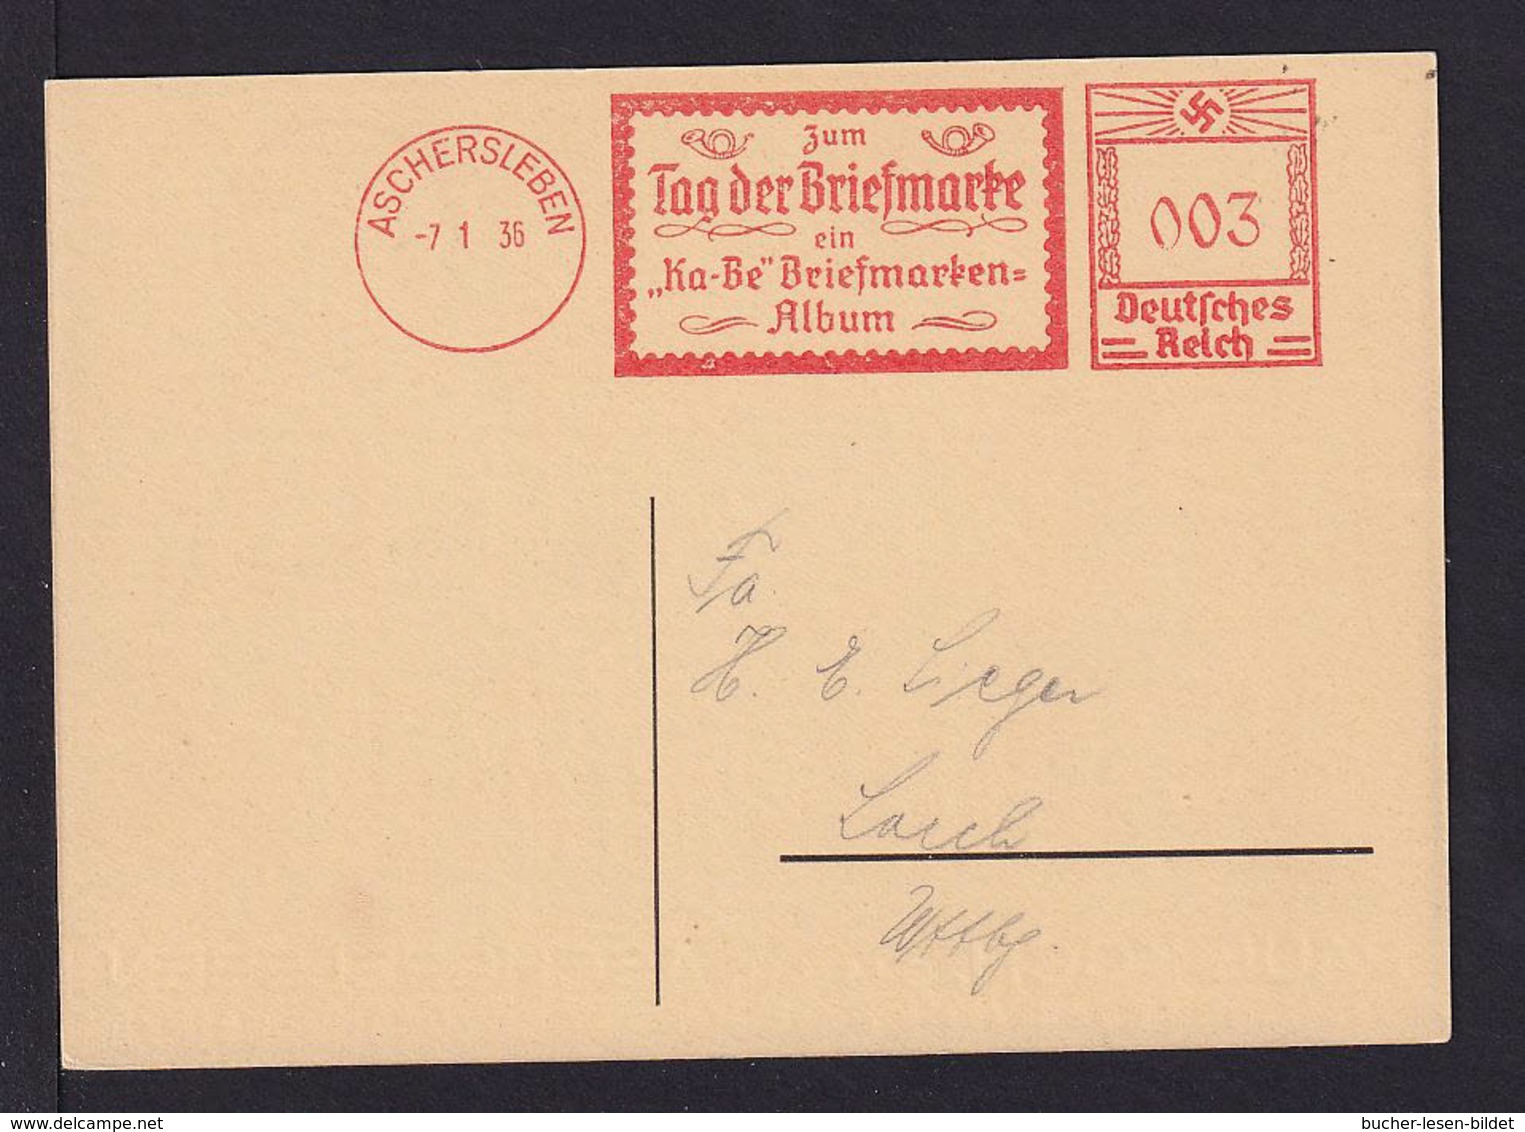 1936 - Freistempel Aschersleben "Zum Tag Der Briefmarke.. Album" - Passende Karte - Giornata Del Francobollo